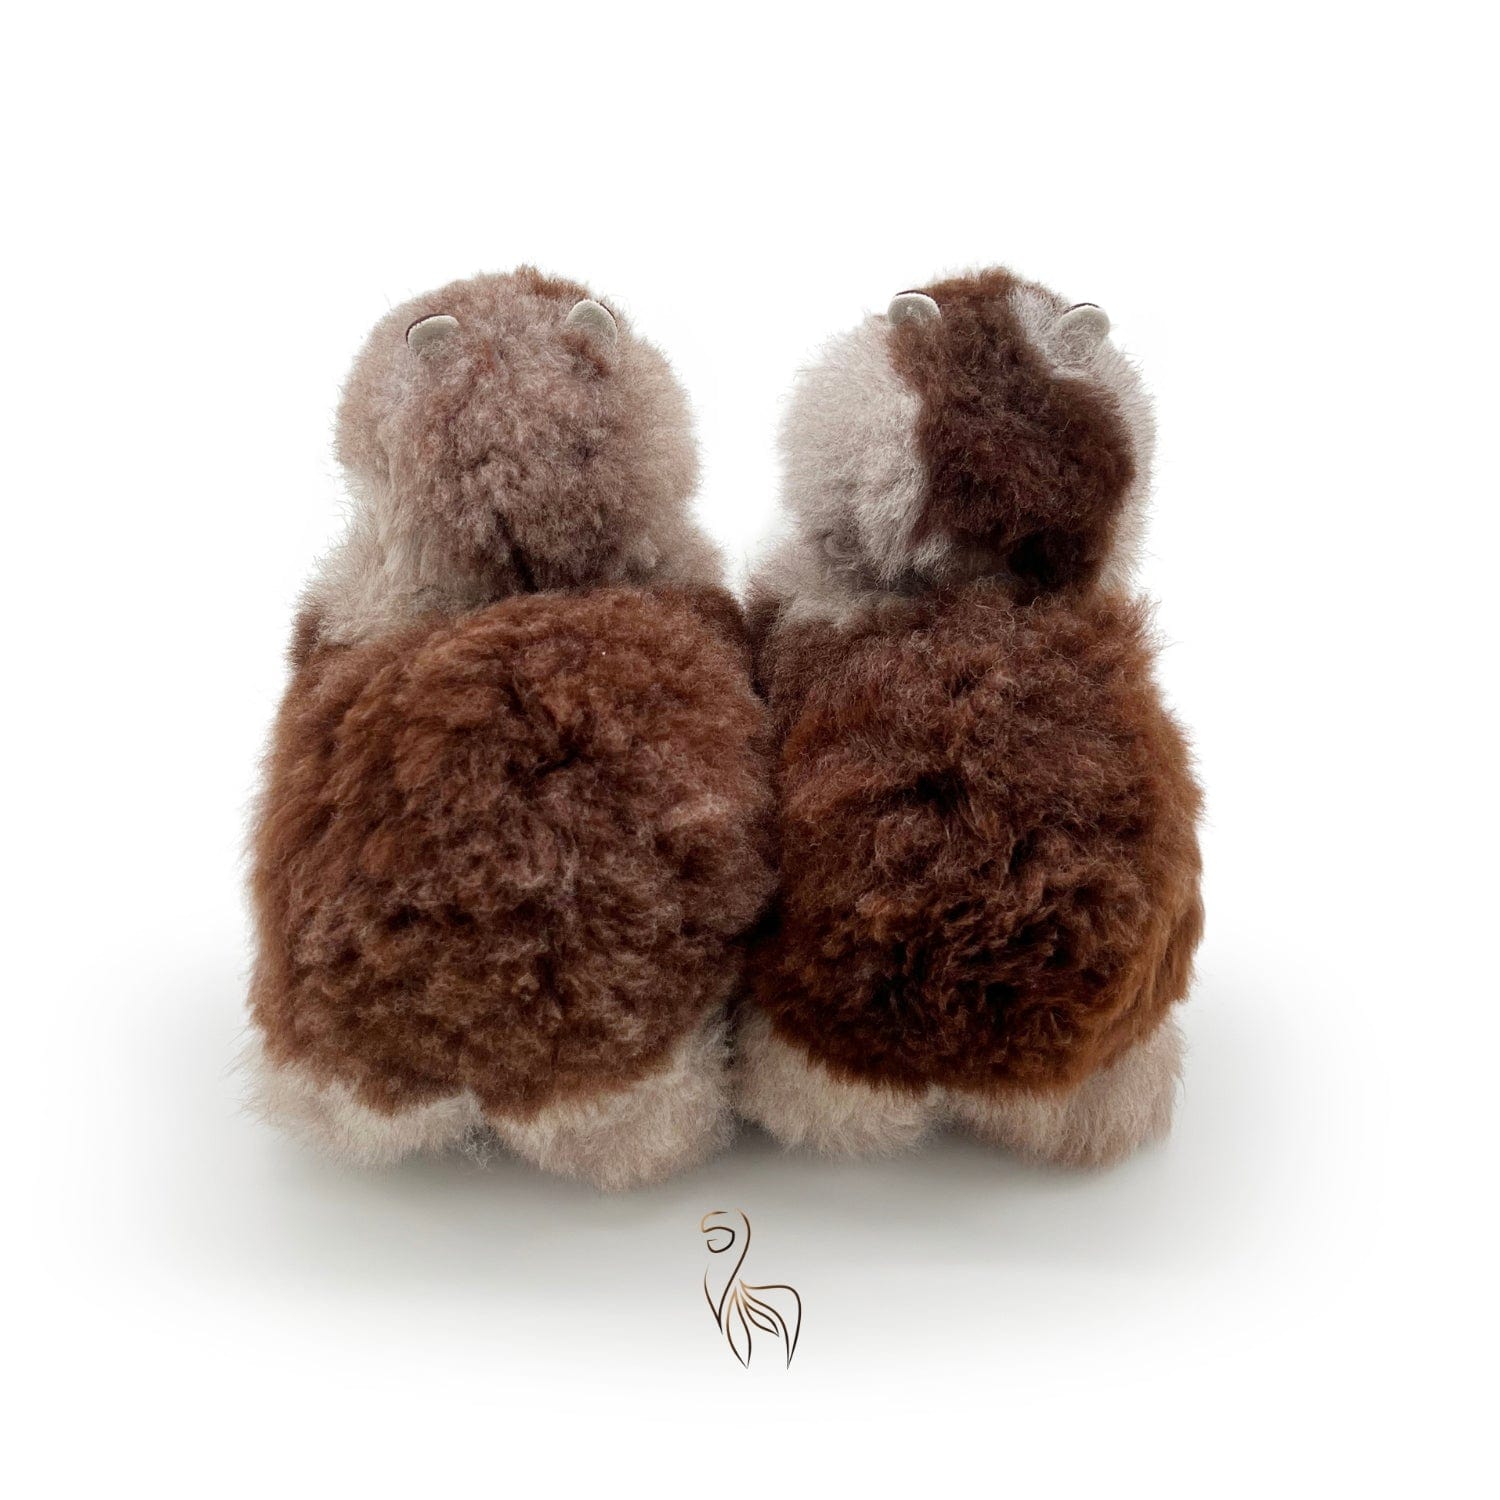 Cozy Winter - Medium Alpaca Toy (32cm) - Limited Edition